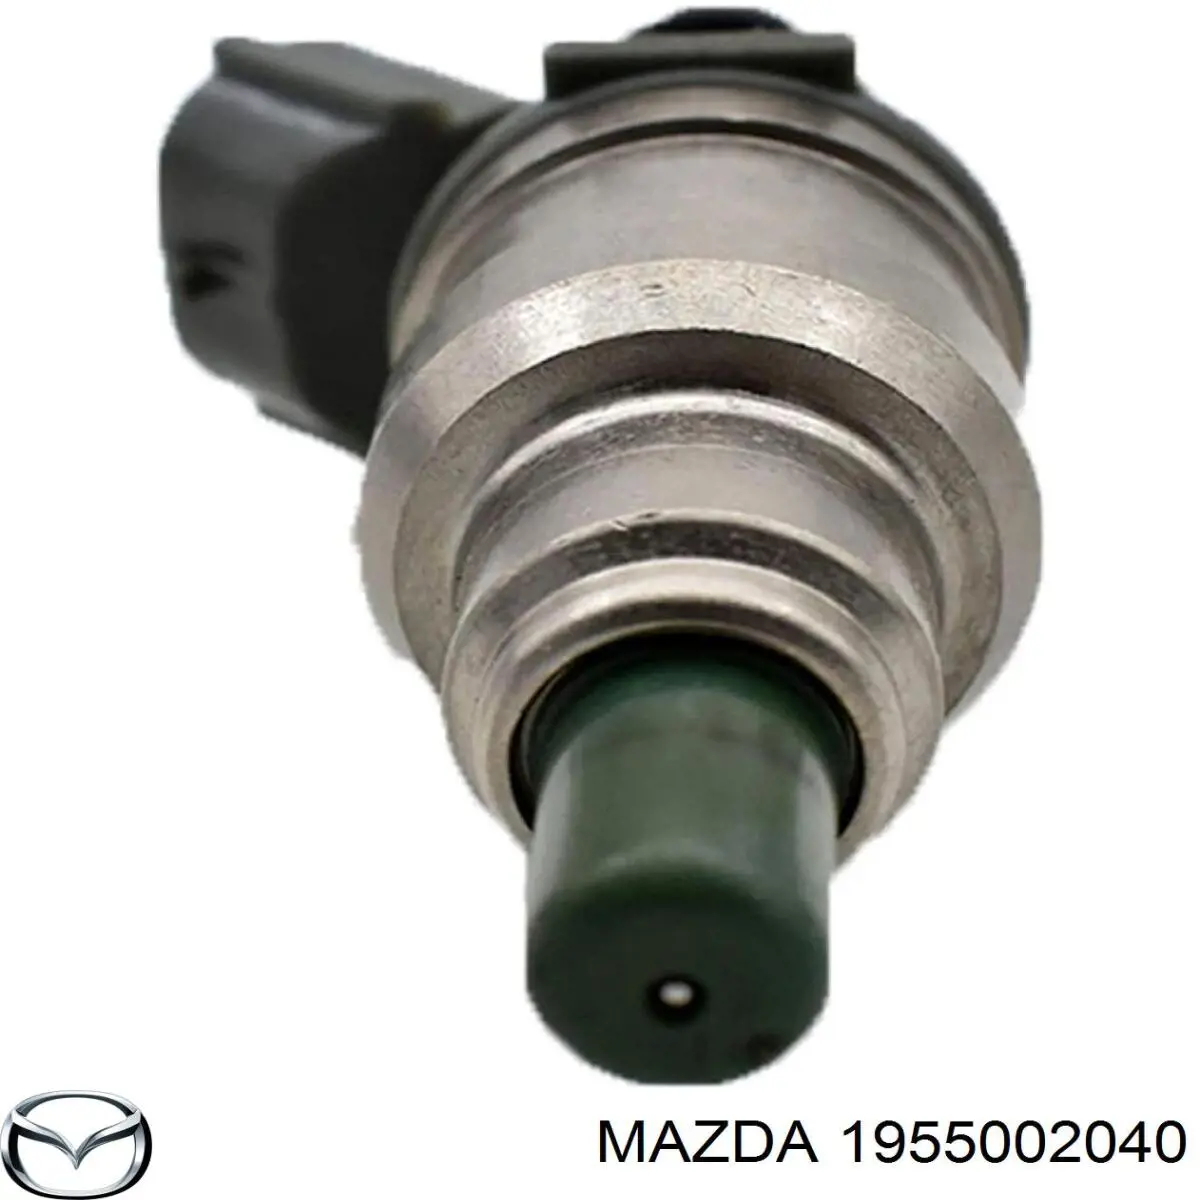 Injetor de injeção de combustível para Mazda 323 (BG)